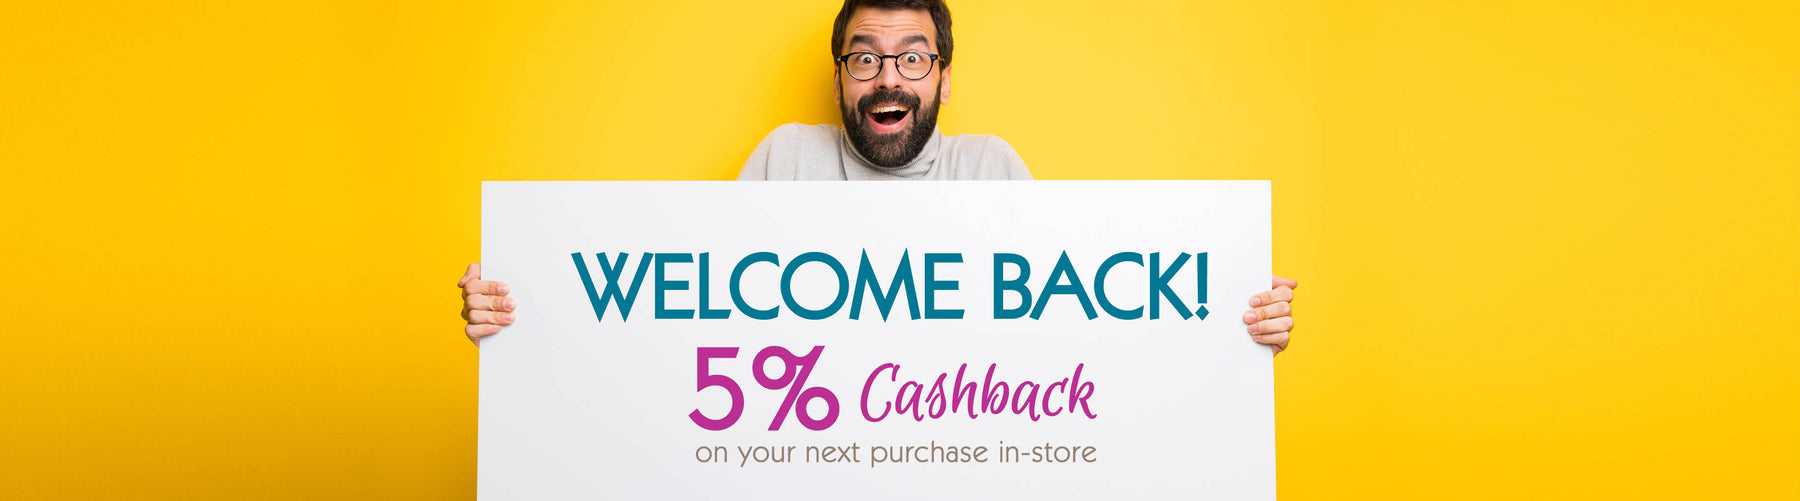 Welcome back - 5% cashback 